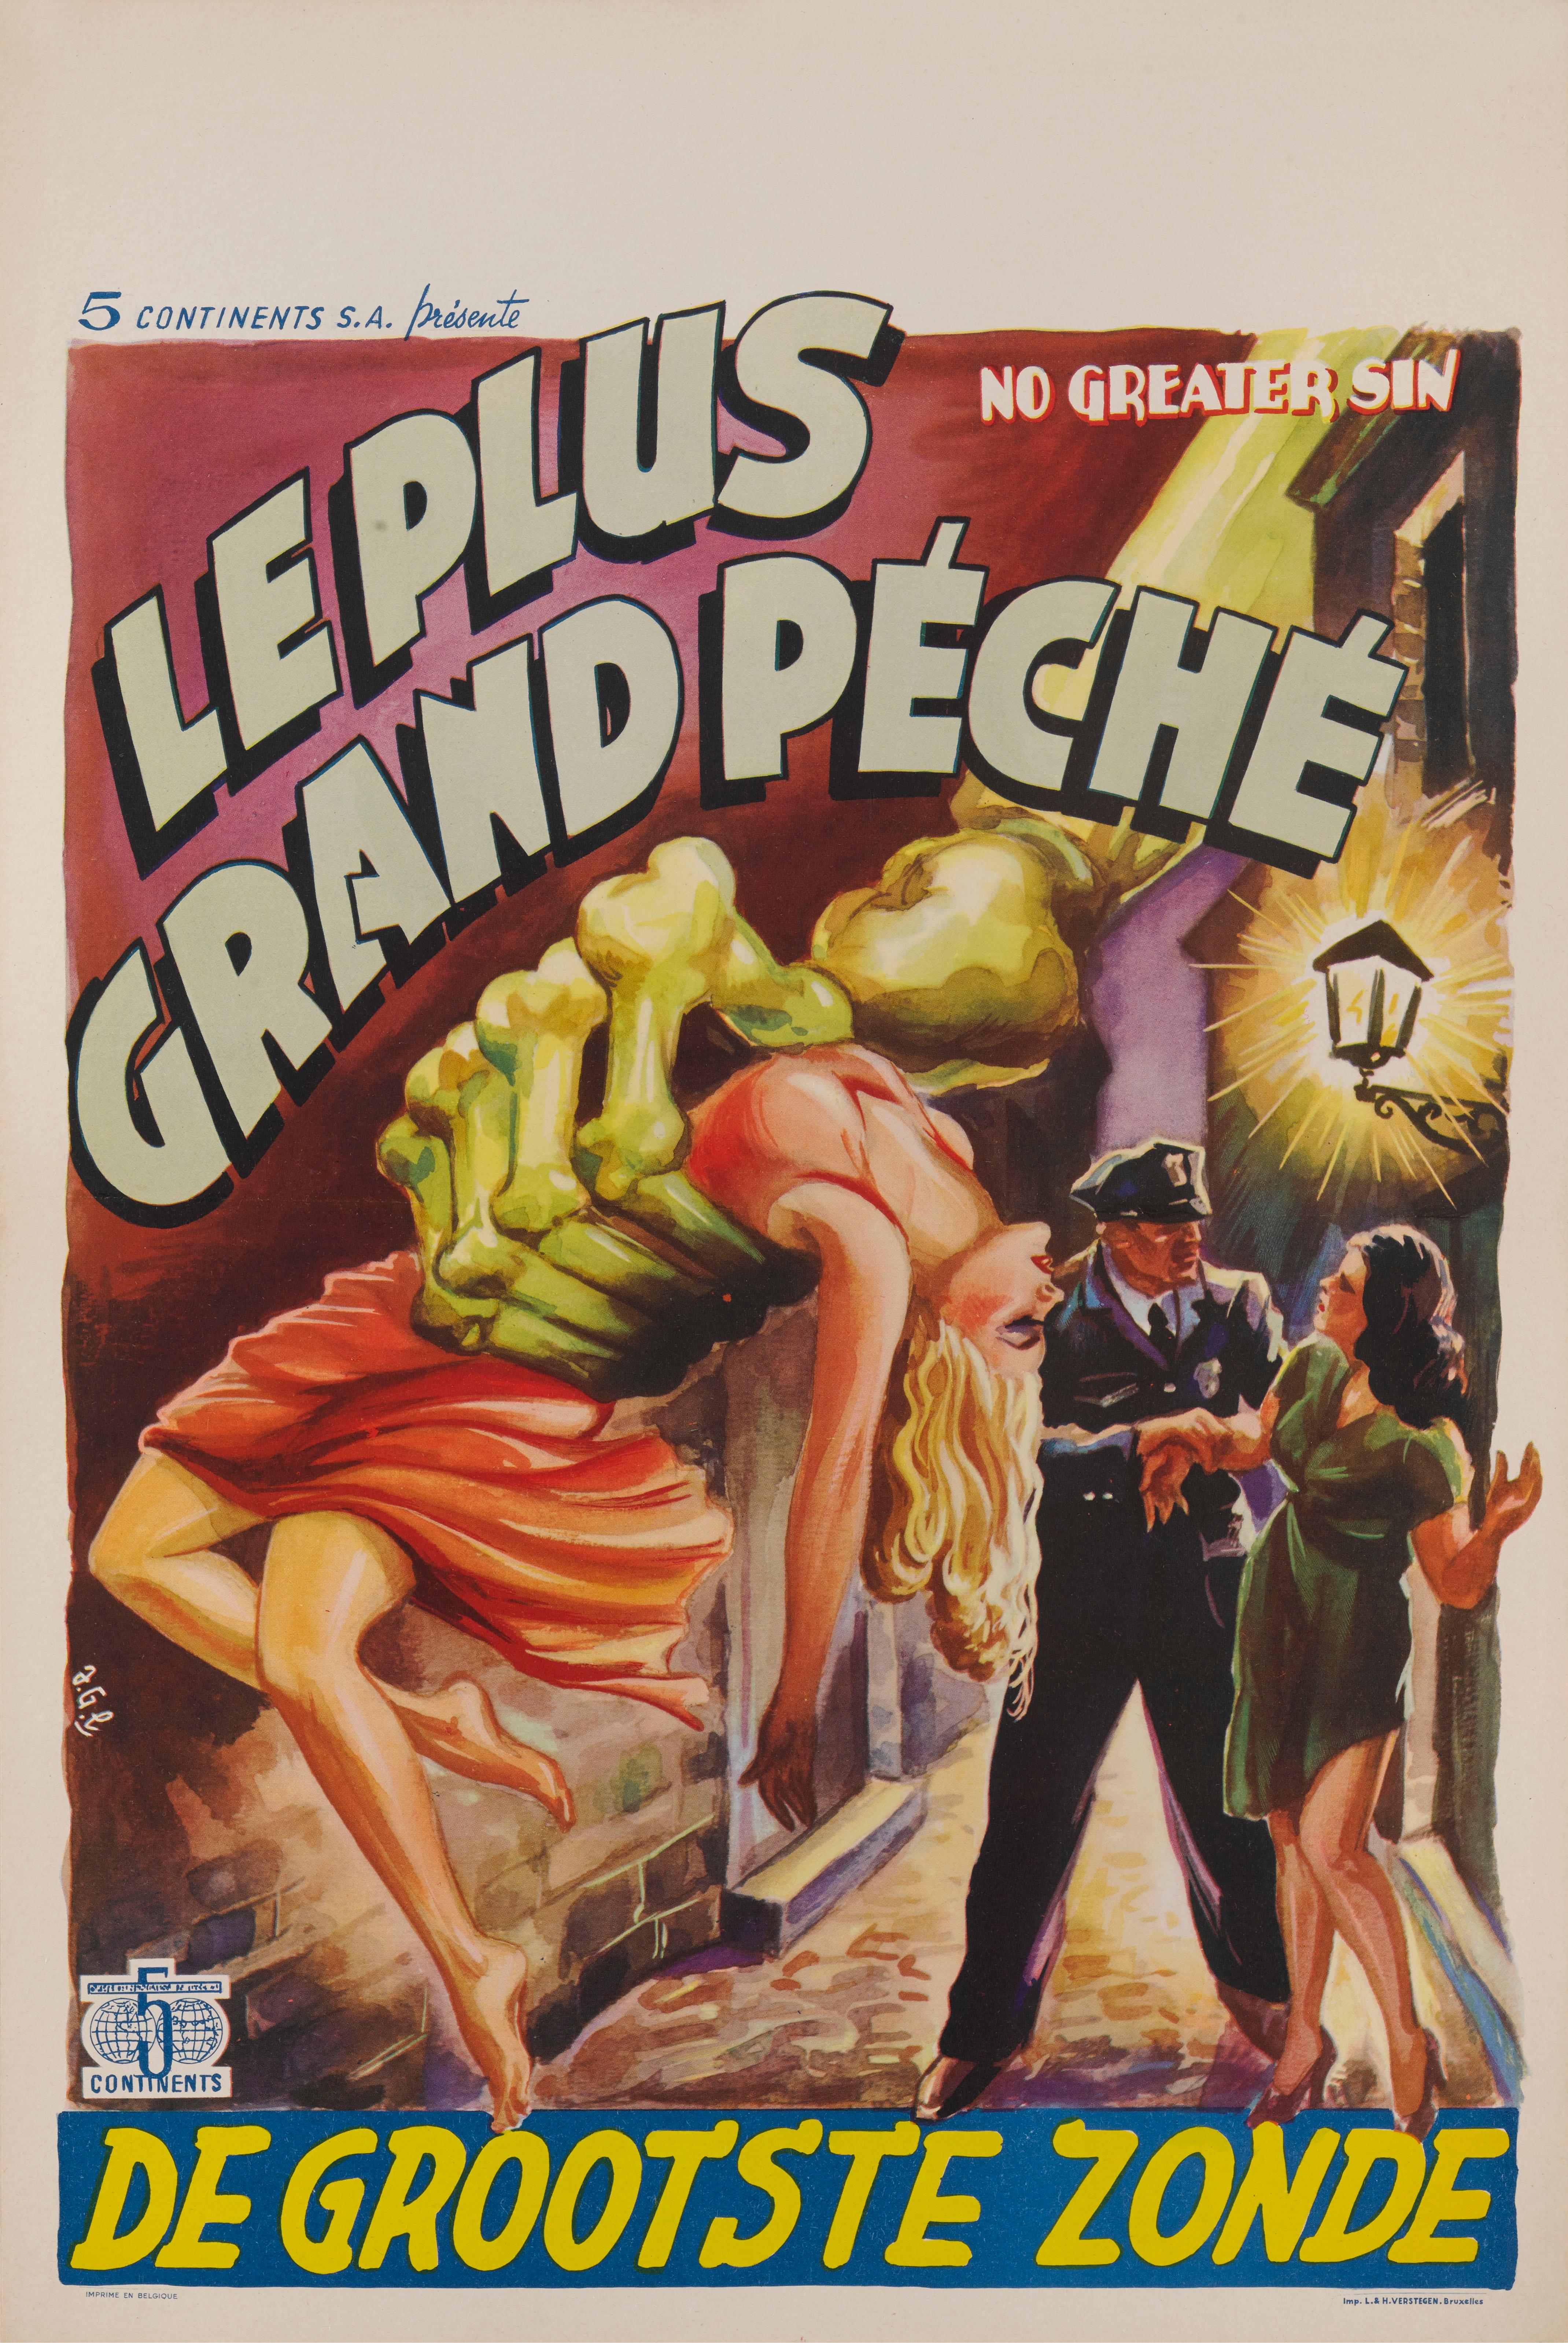 Affiche originale belge du film d'exploitation de 1941 réalisé par William High avec LeonAmes et Launa Walters.
Le film n'est sorti en Belgique qu'après la Seconde Guerre mondiale et cette affiche provient de la première sortie dans le pays.